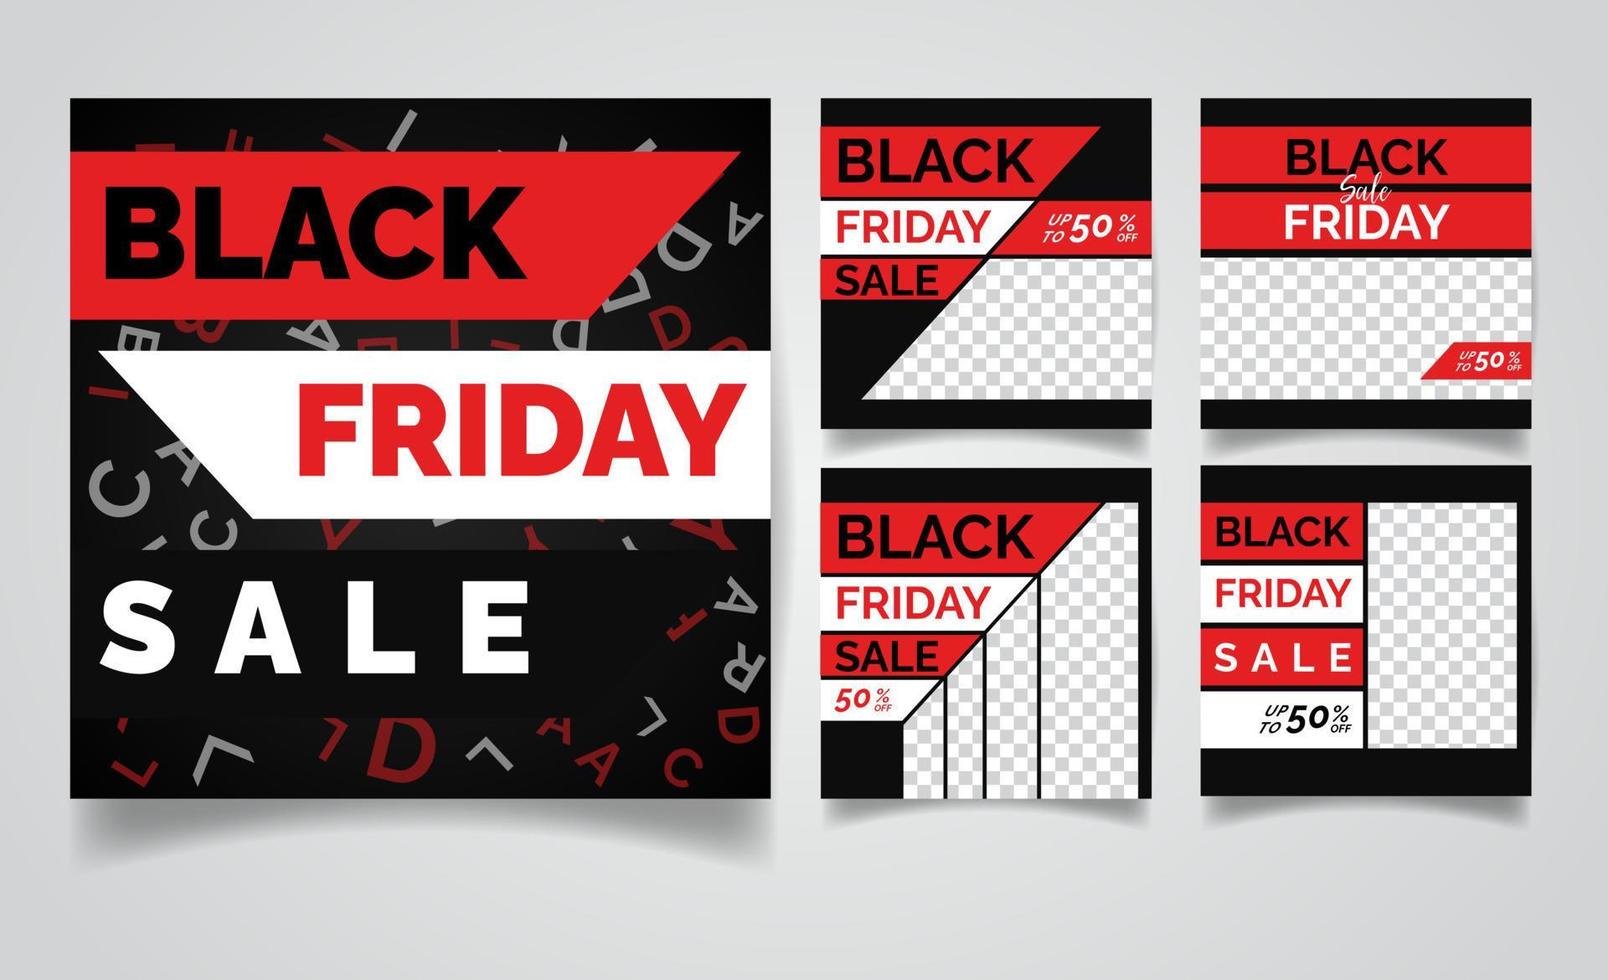 rode en zwarte kleur banner sjabloon zwarte vrijdag verkoop sociale media webbanner set voor winkelen, verkoop, productpromotie. vector